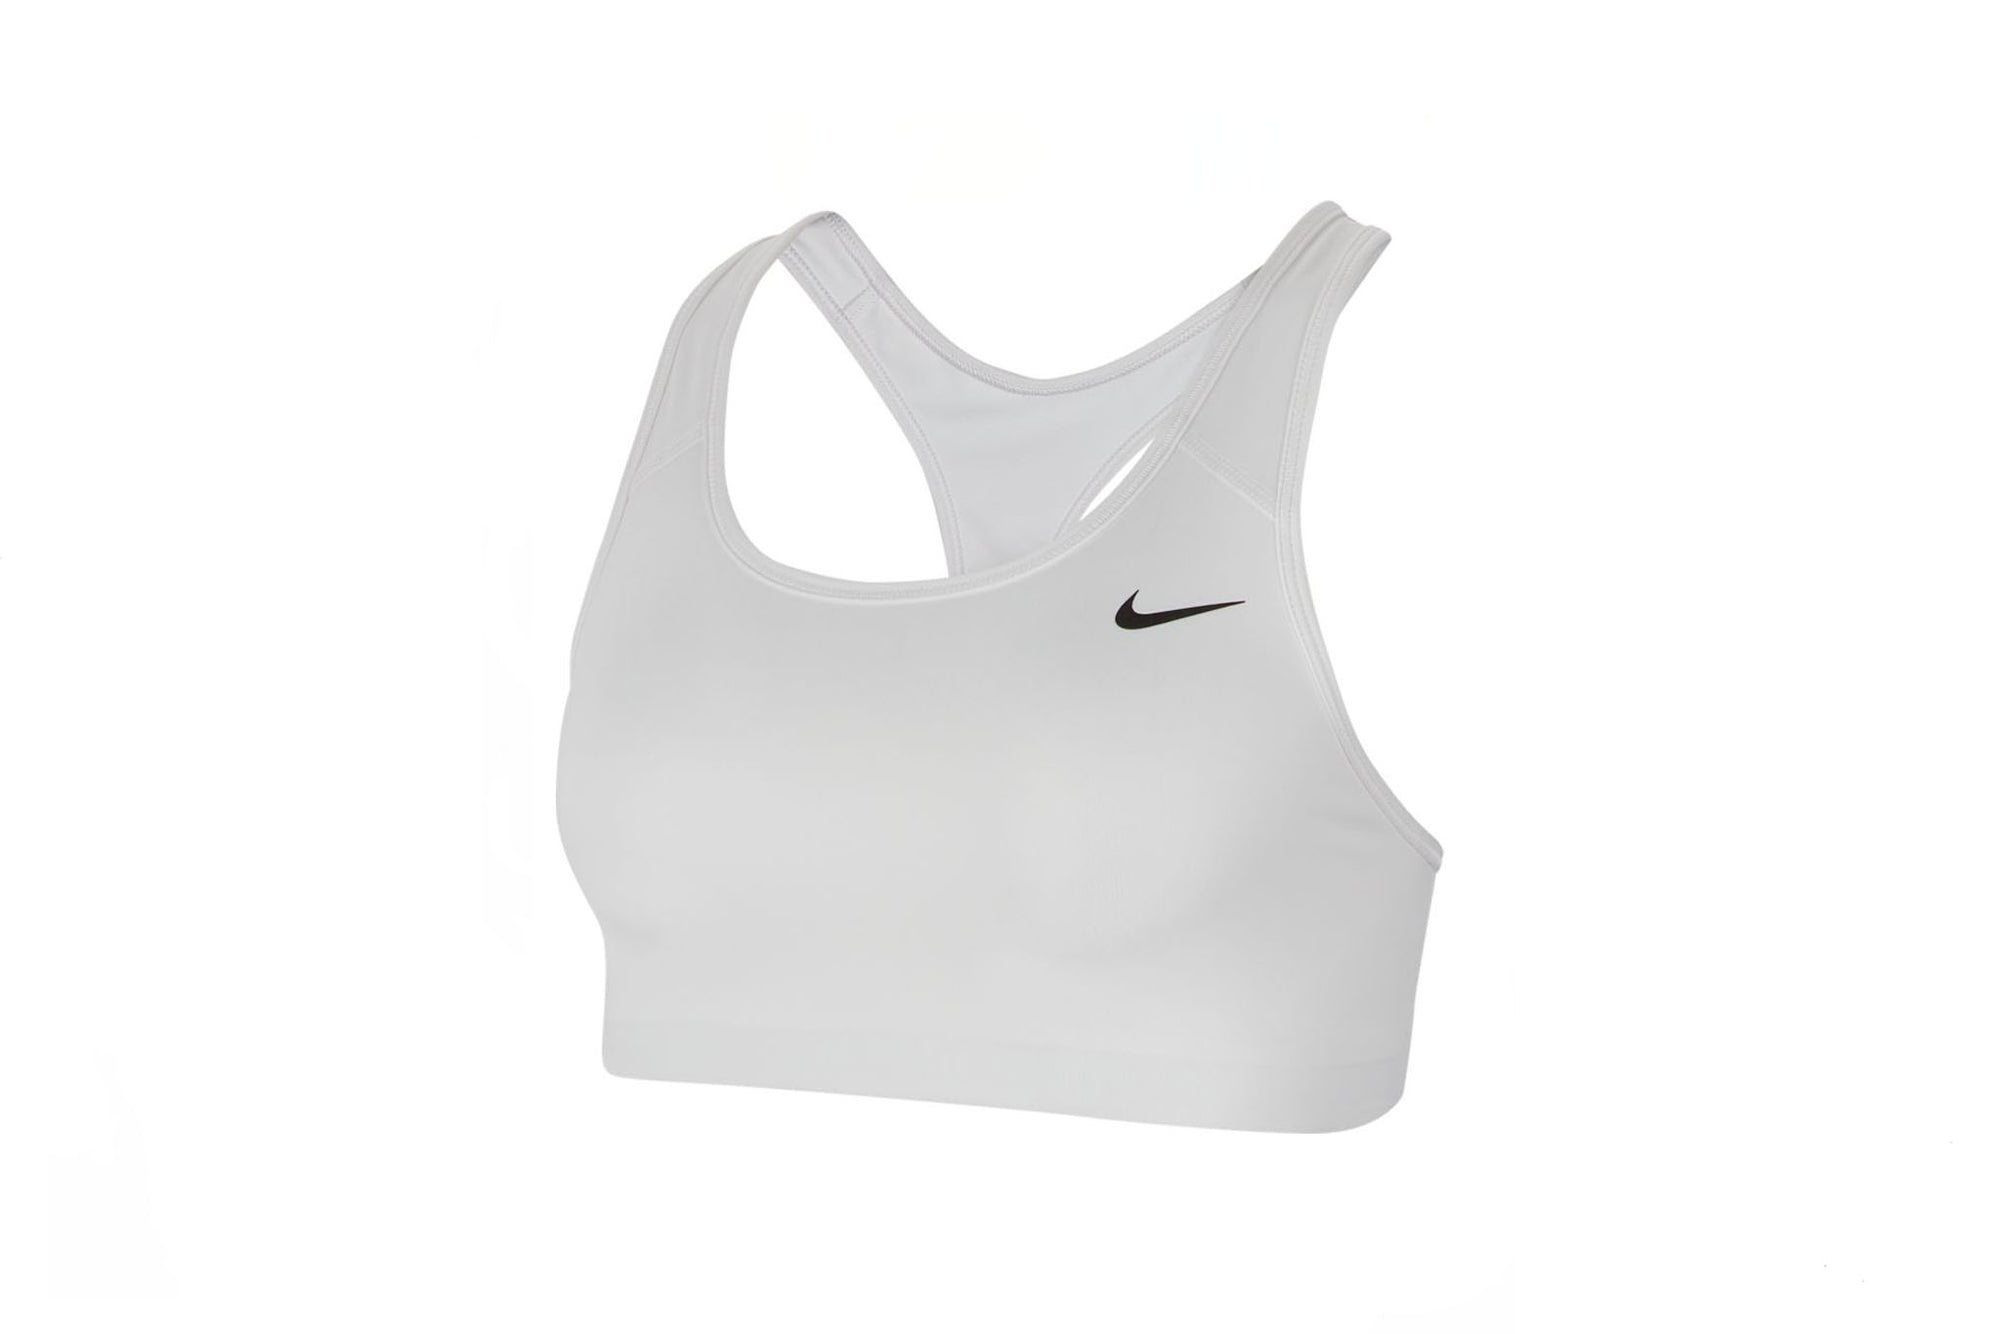 Nike Dri-Fit Swoosh Women's Medium- Support Non-Padded Sports Bra